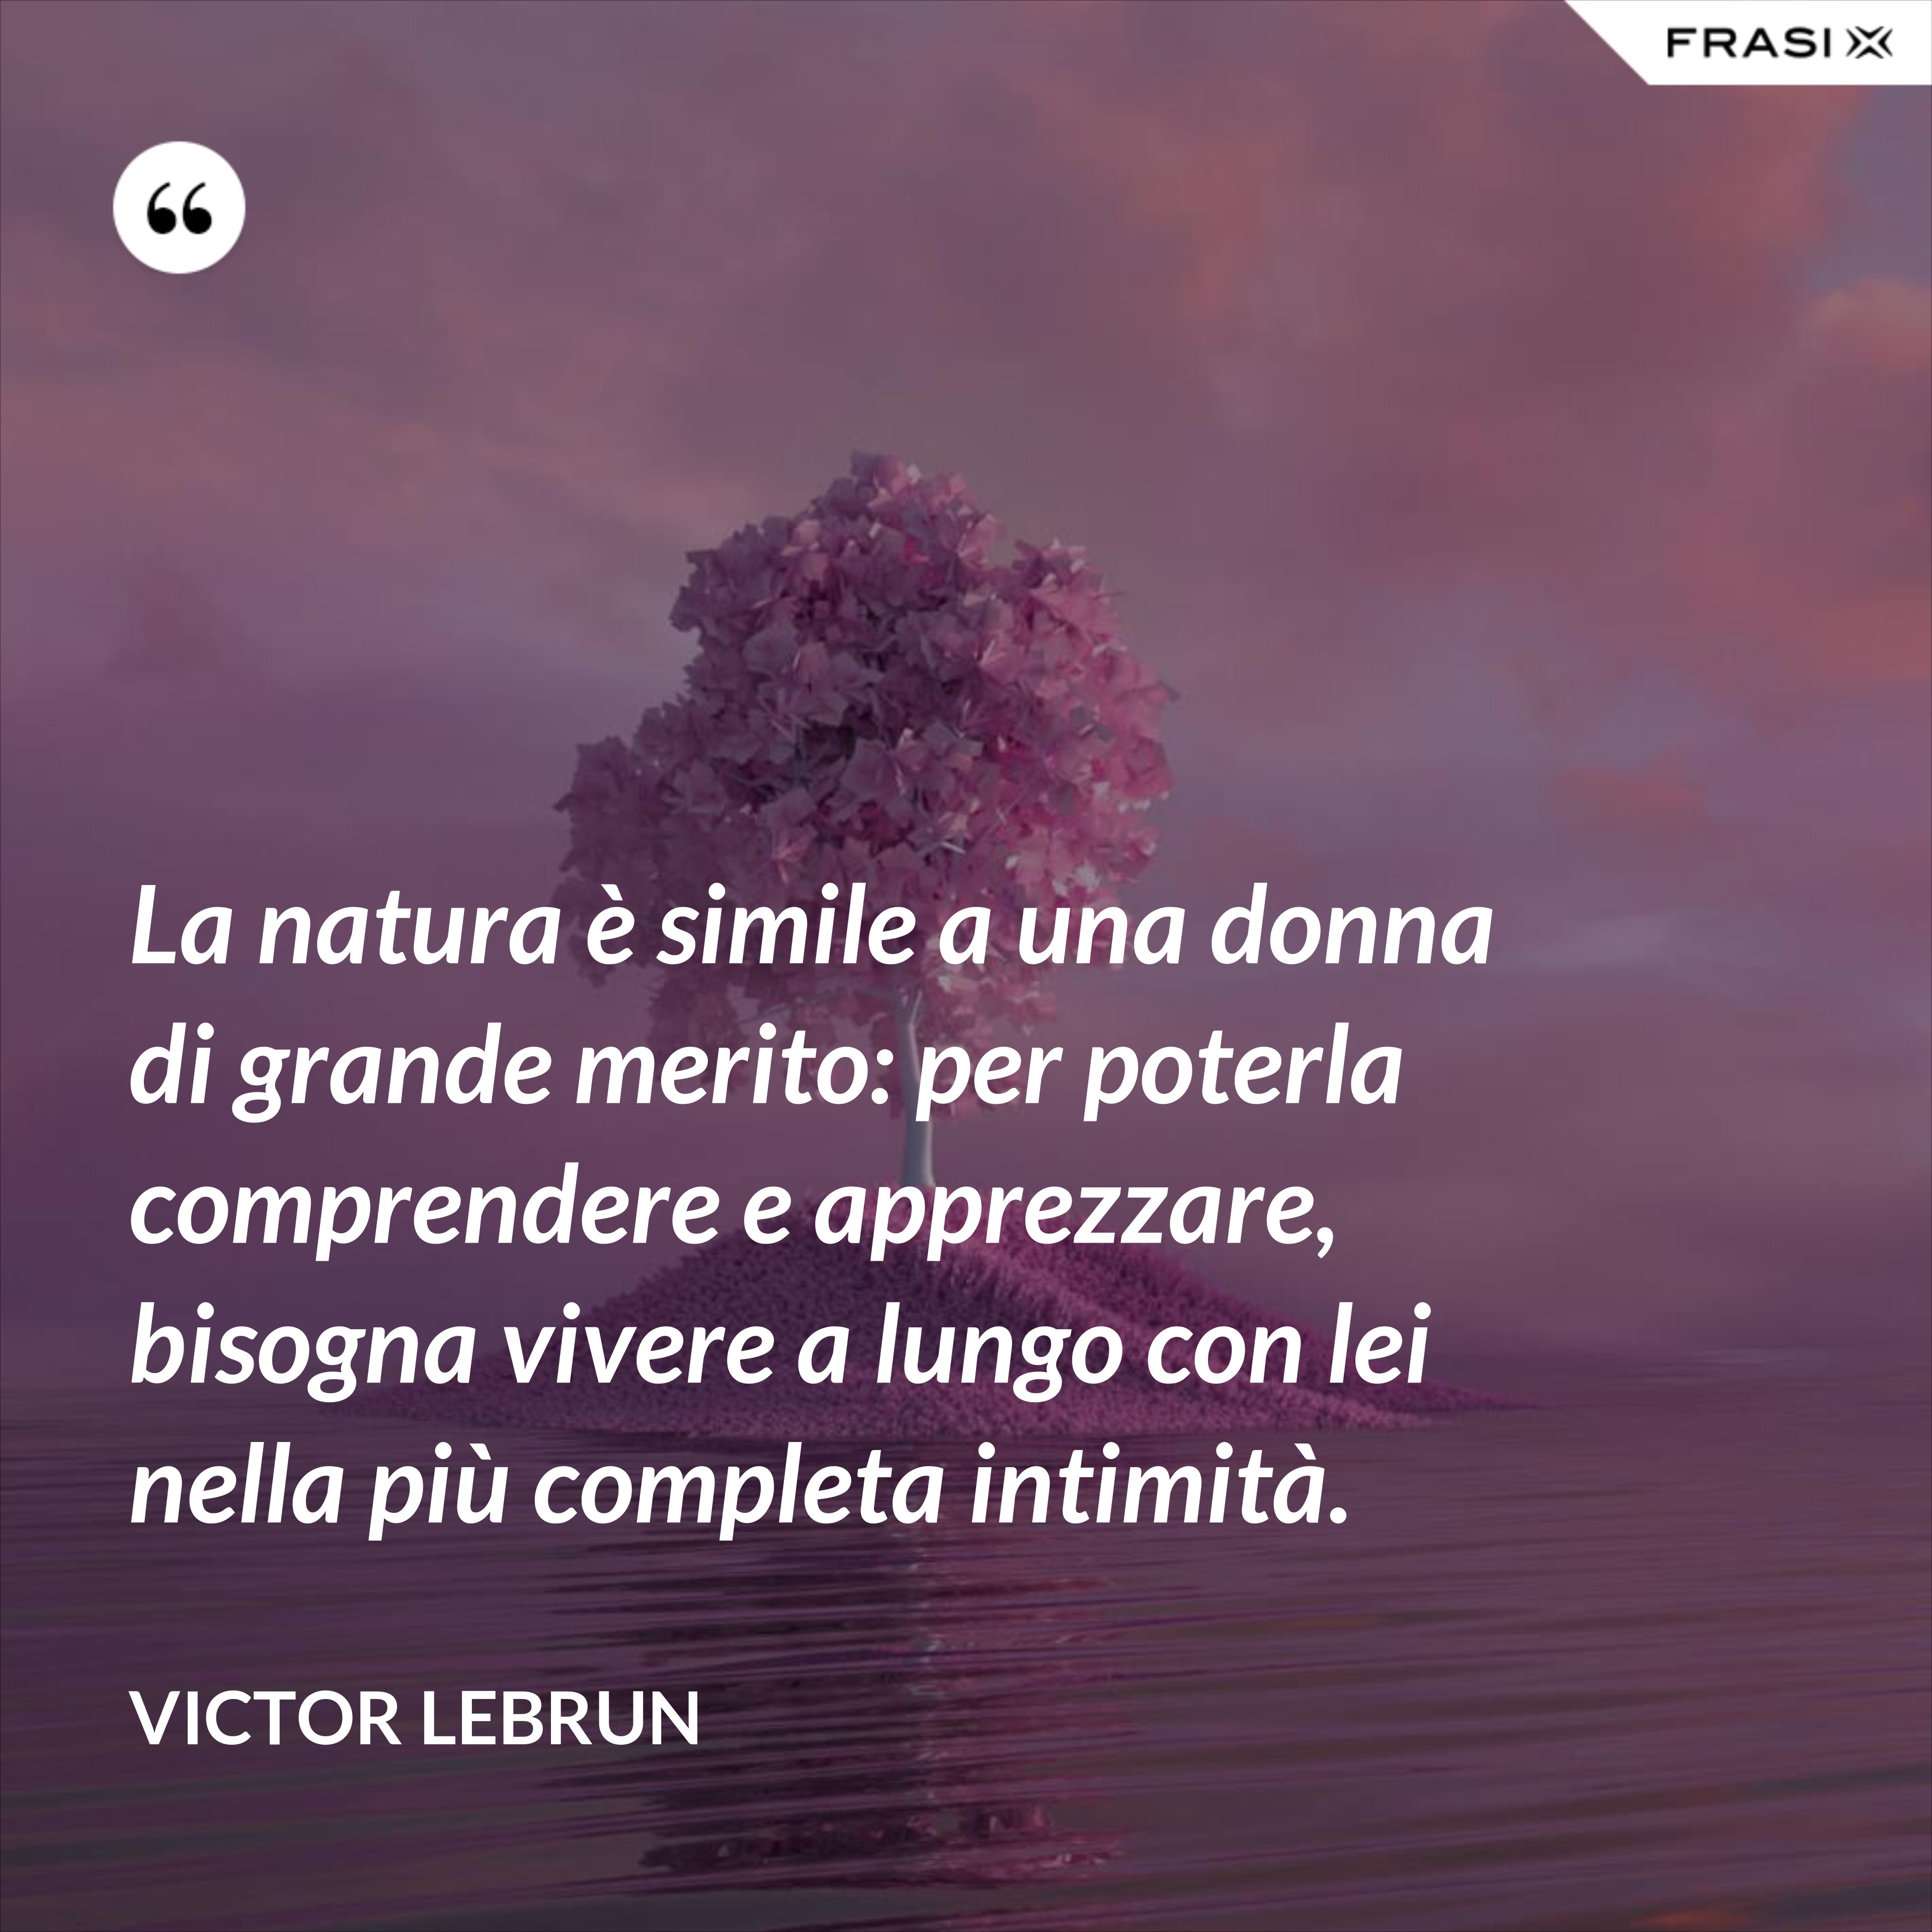 La natura è simile a una donna di grande merito: per poterla comprendere e apprezzare, bisogna vivere a lungo con lei nella più completa intimità. - Victor Lebrun